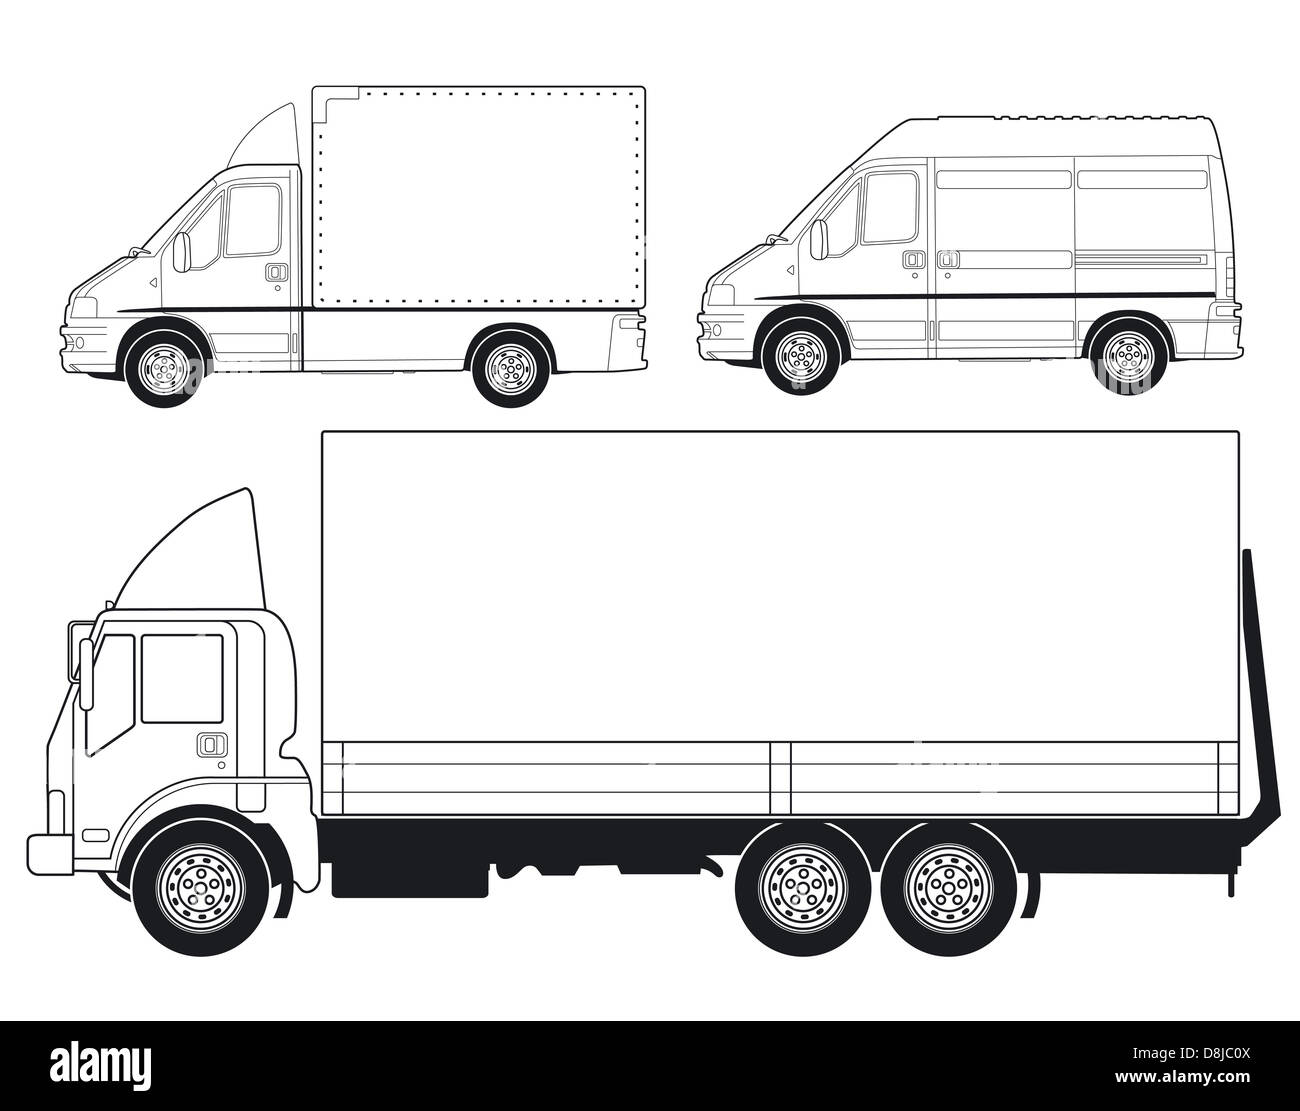 Camiones y furgonetas Foto de stock